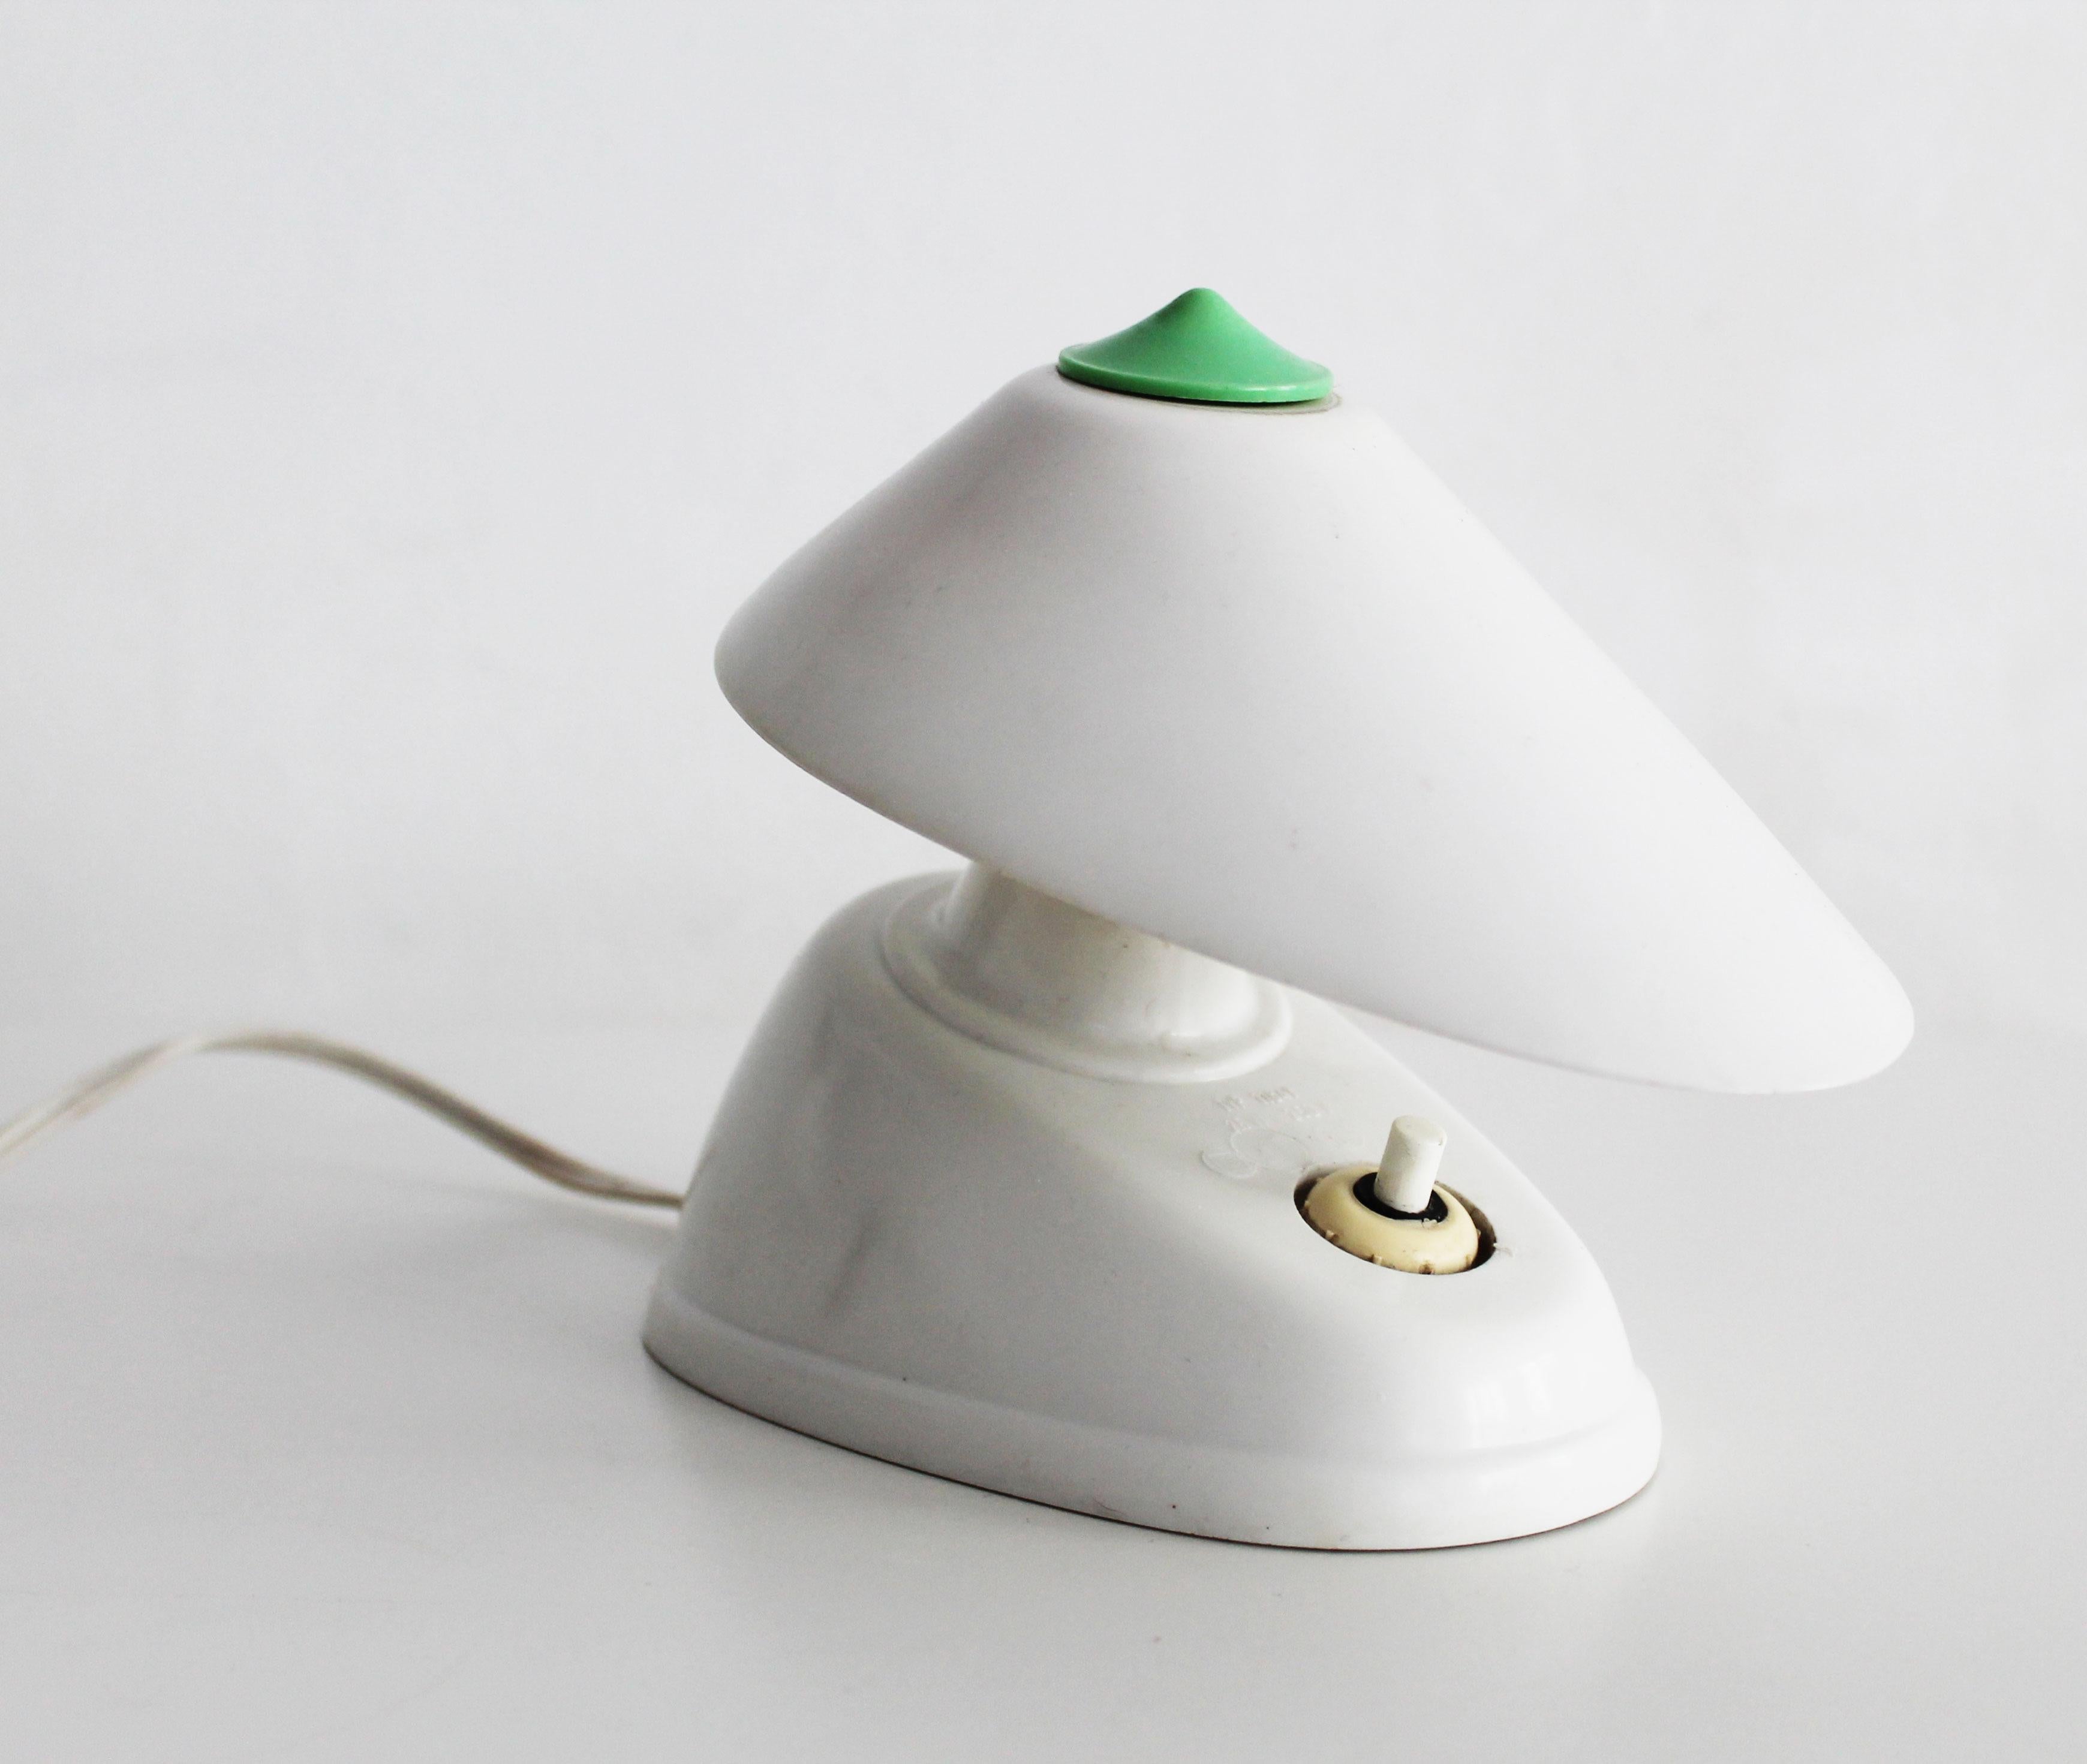 Dies ist ein Originalstück, das von Eletroskvit Nove Zamky in der ehemaligen Tschechoslowakei hergestellt wurde. Diese Lampe ist aus weißem Bakelit gefertigt und kann als Wandleuchte aufgehängt oder einfach als Schreibtischlampe verwendet werden. 